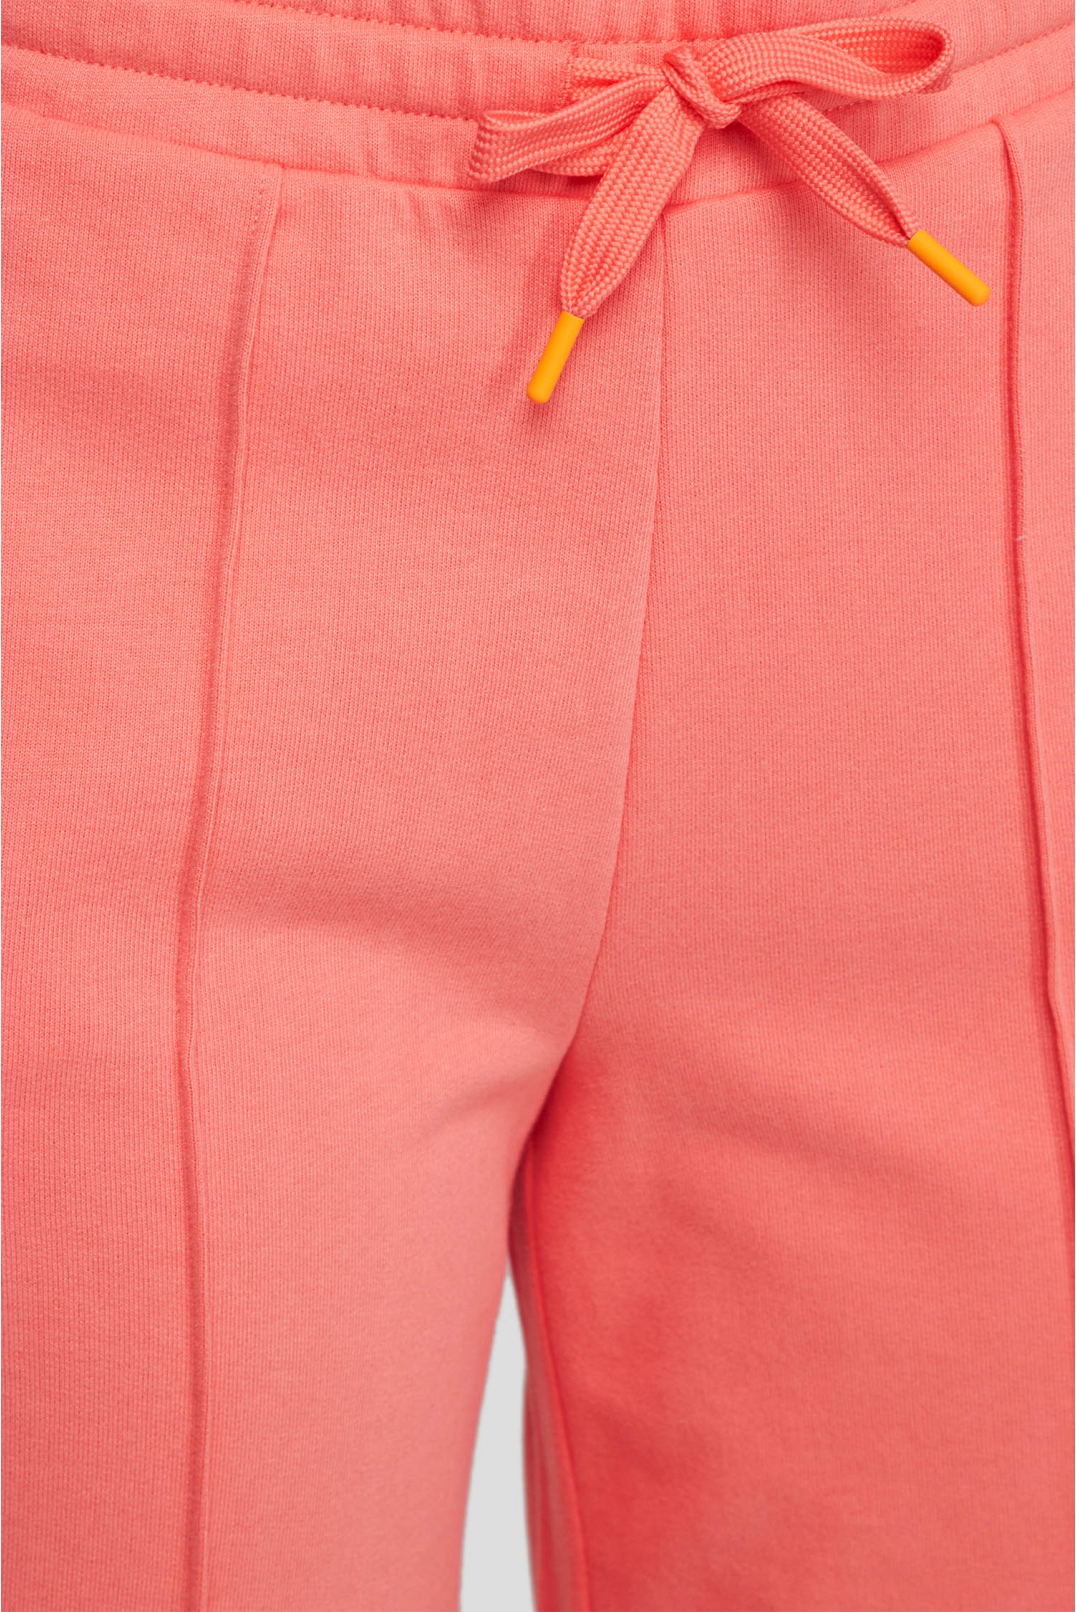 Женские розовые спортивные брюки - 3